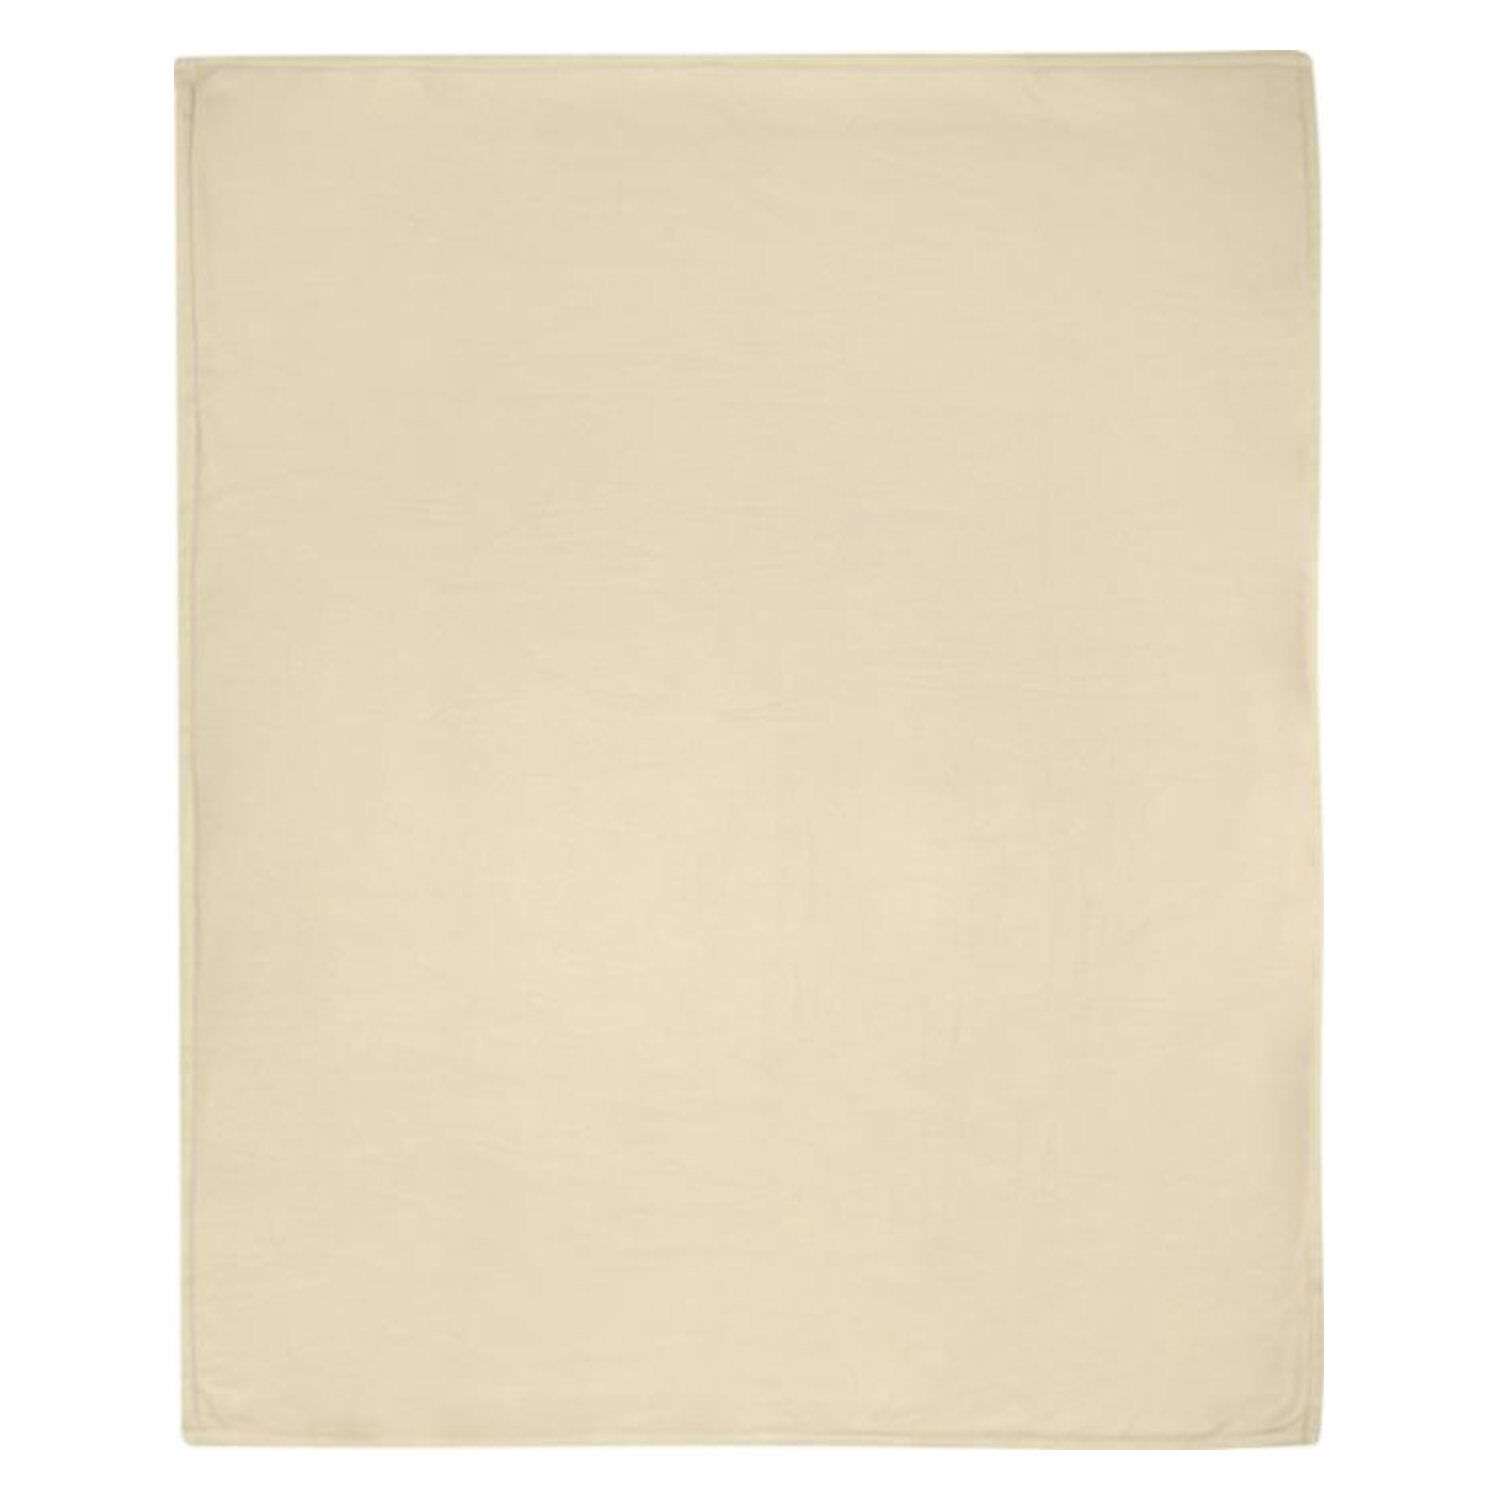 Marigold RPET Blanket (showing Polar fleece outer)